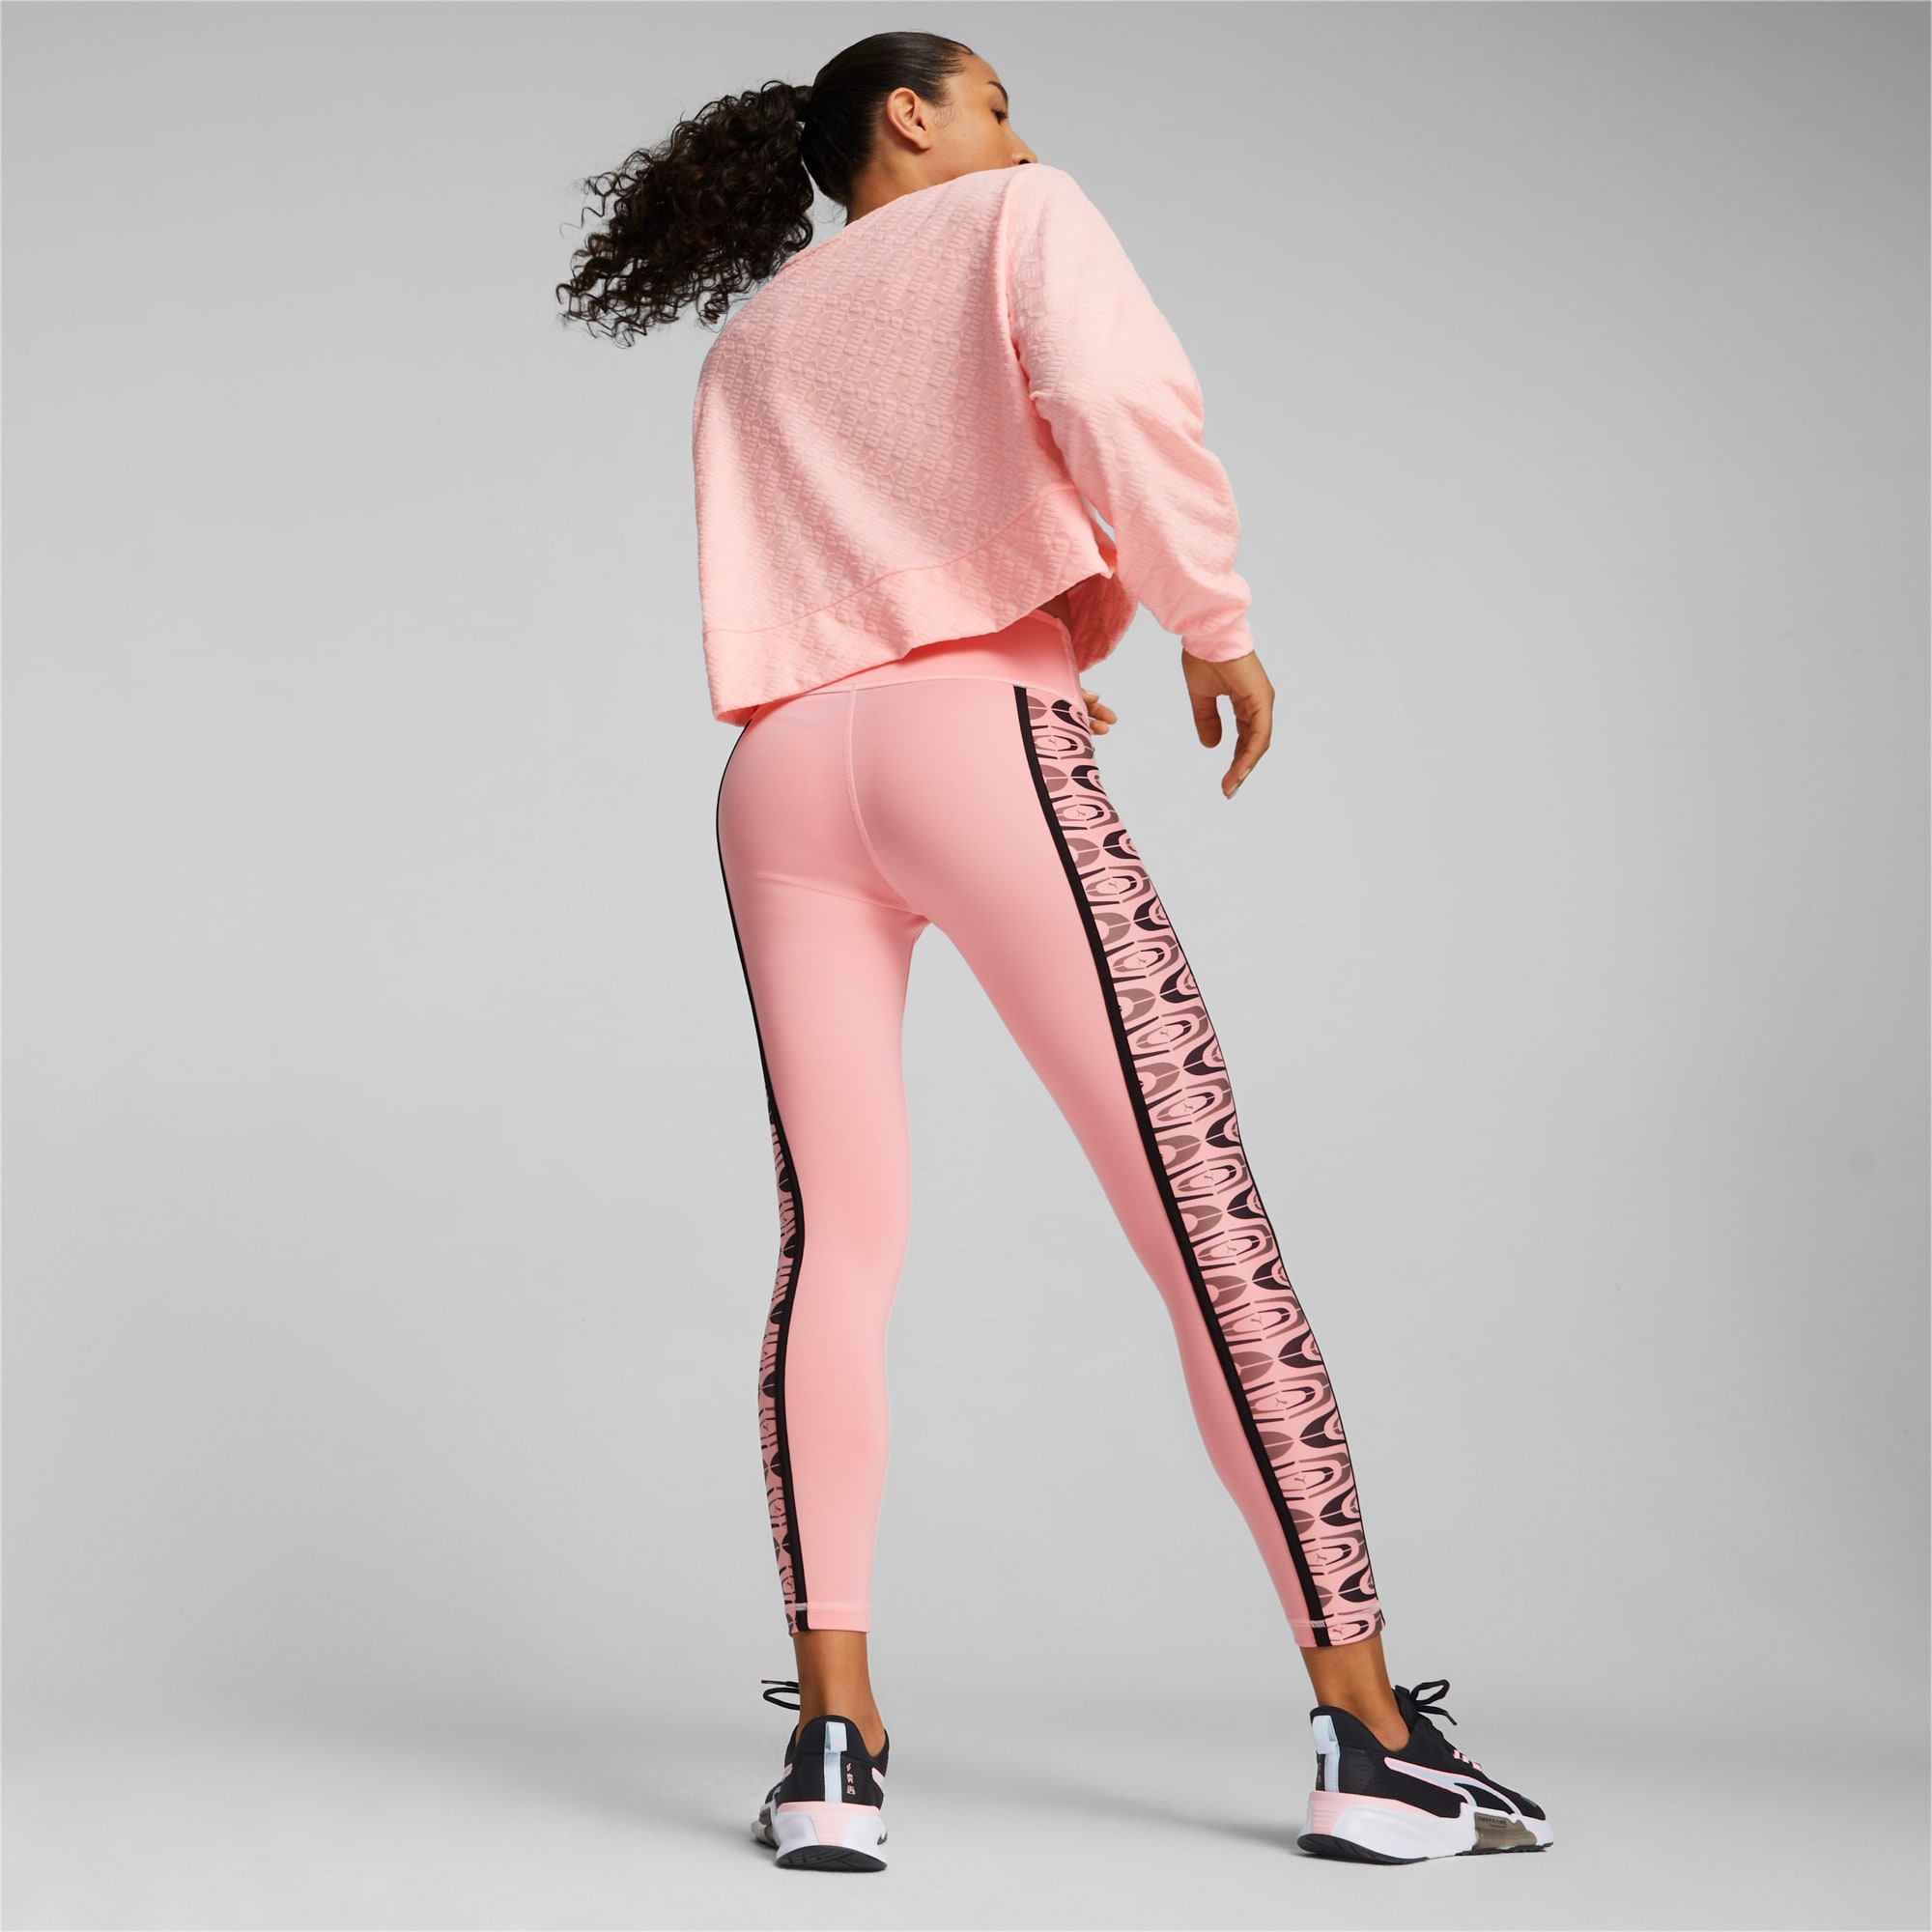 Evolution Pink Athletic Leggings for Women